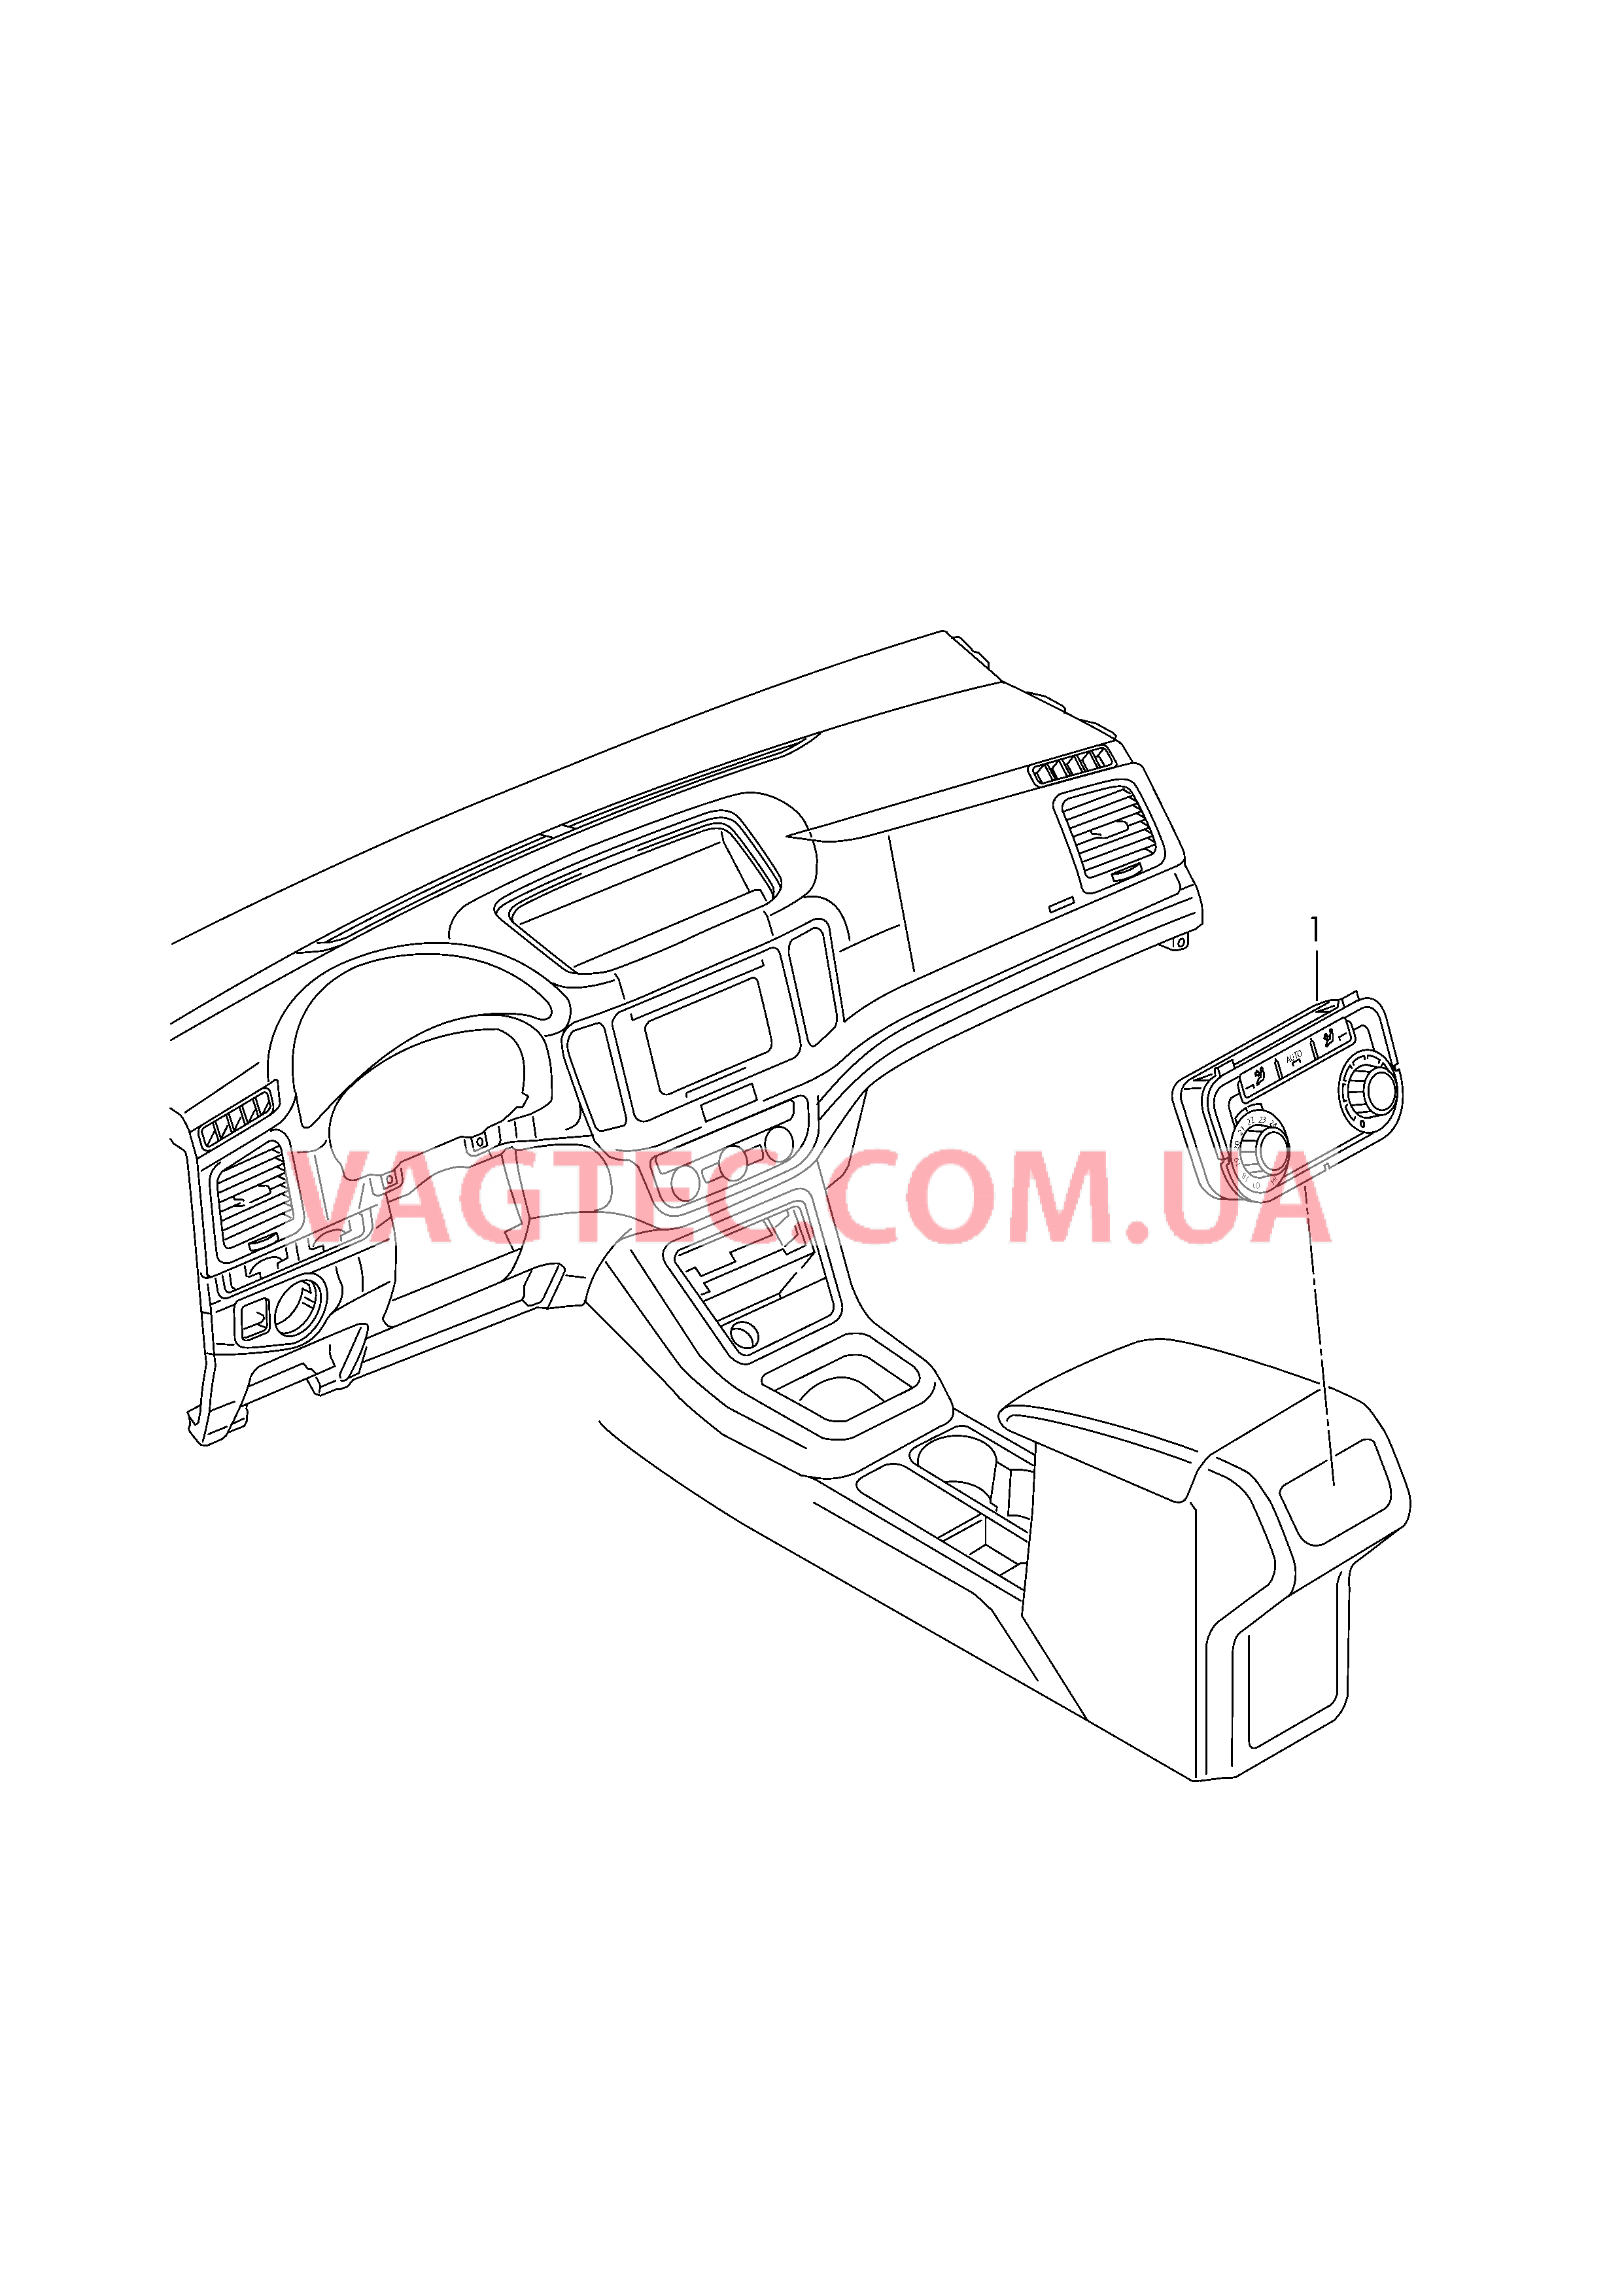 БУ климатической установки Панель управления и индикации БУ климатической установки с электронным управлением   Центральная консоль  для SEAT Alhambra 2016